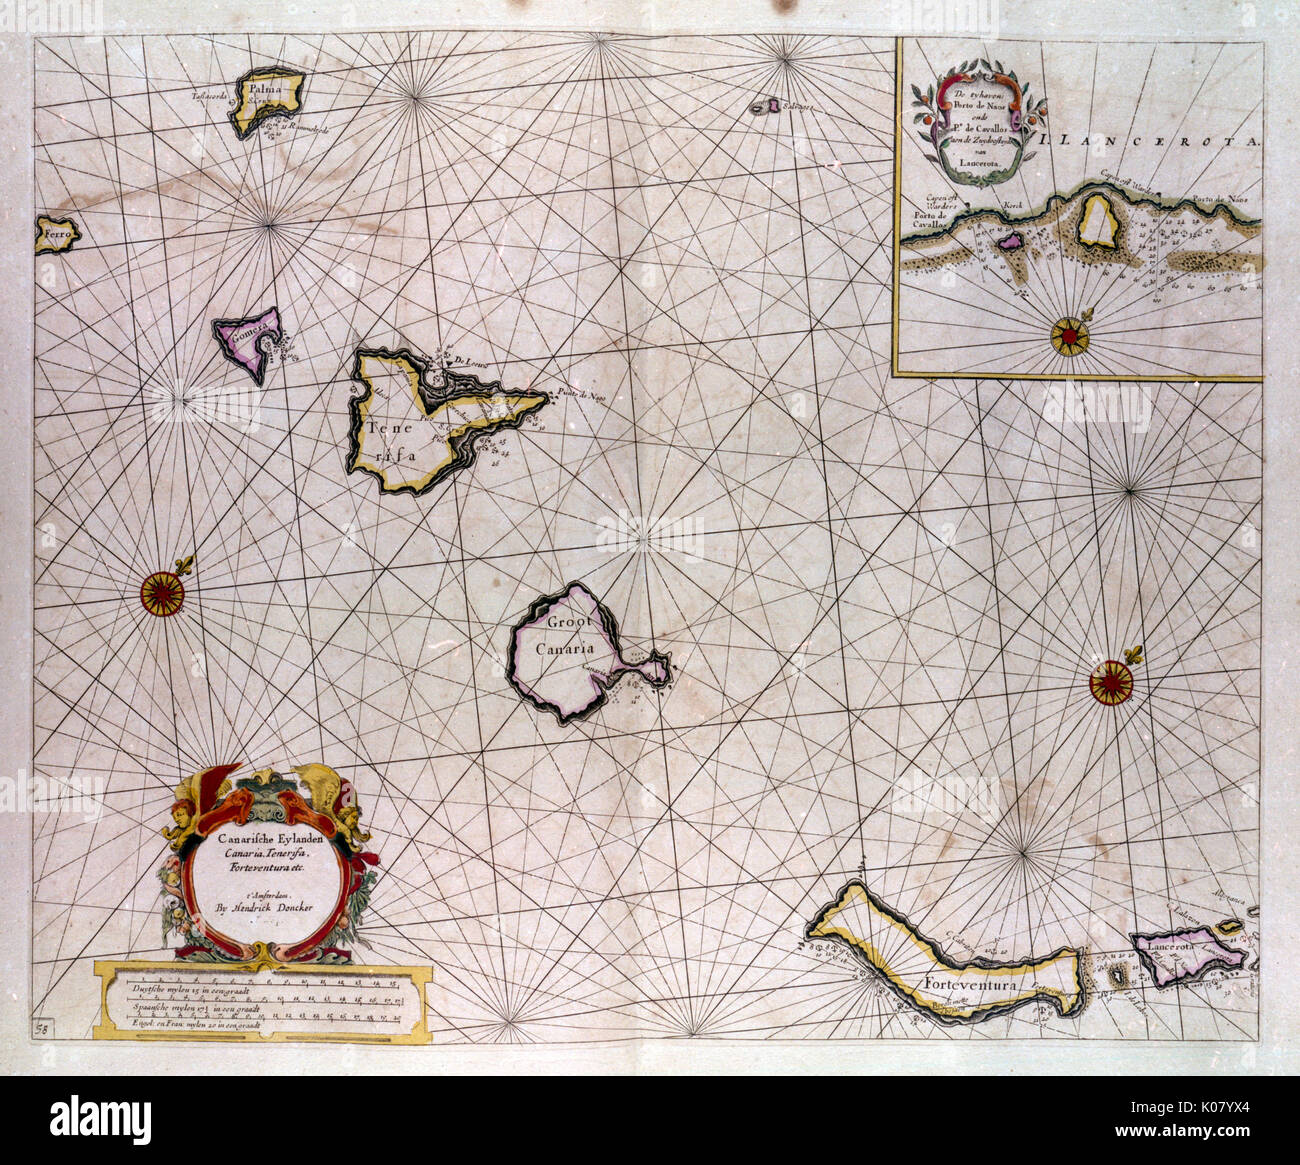 Mapa de las Islas Canarias. Fecha: circa 1666 Foto de stock